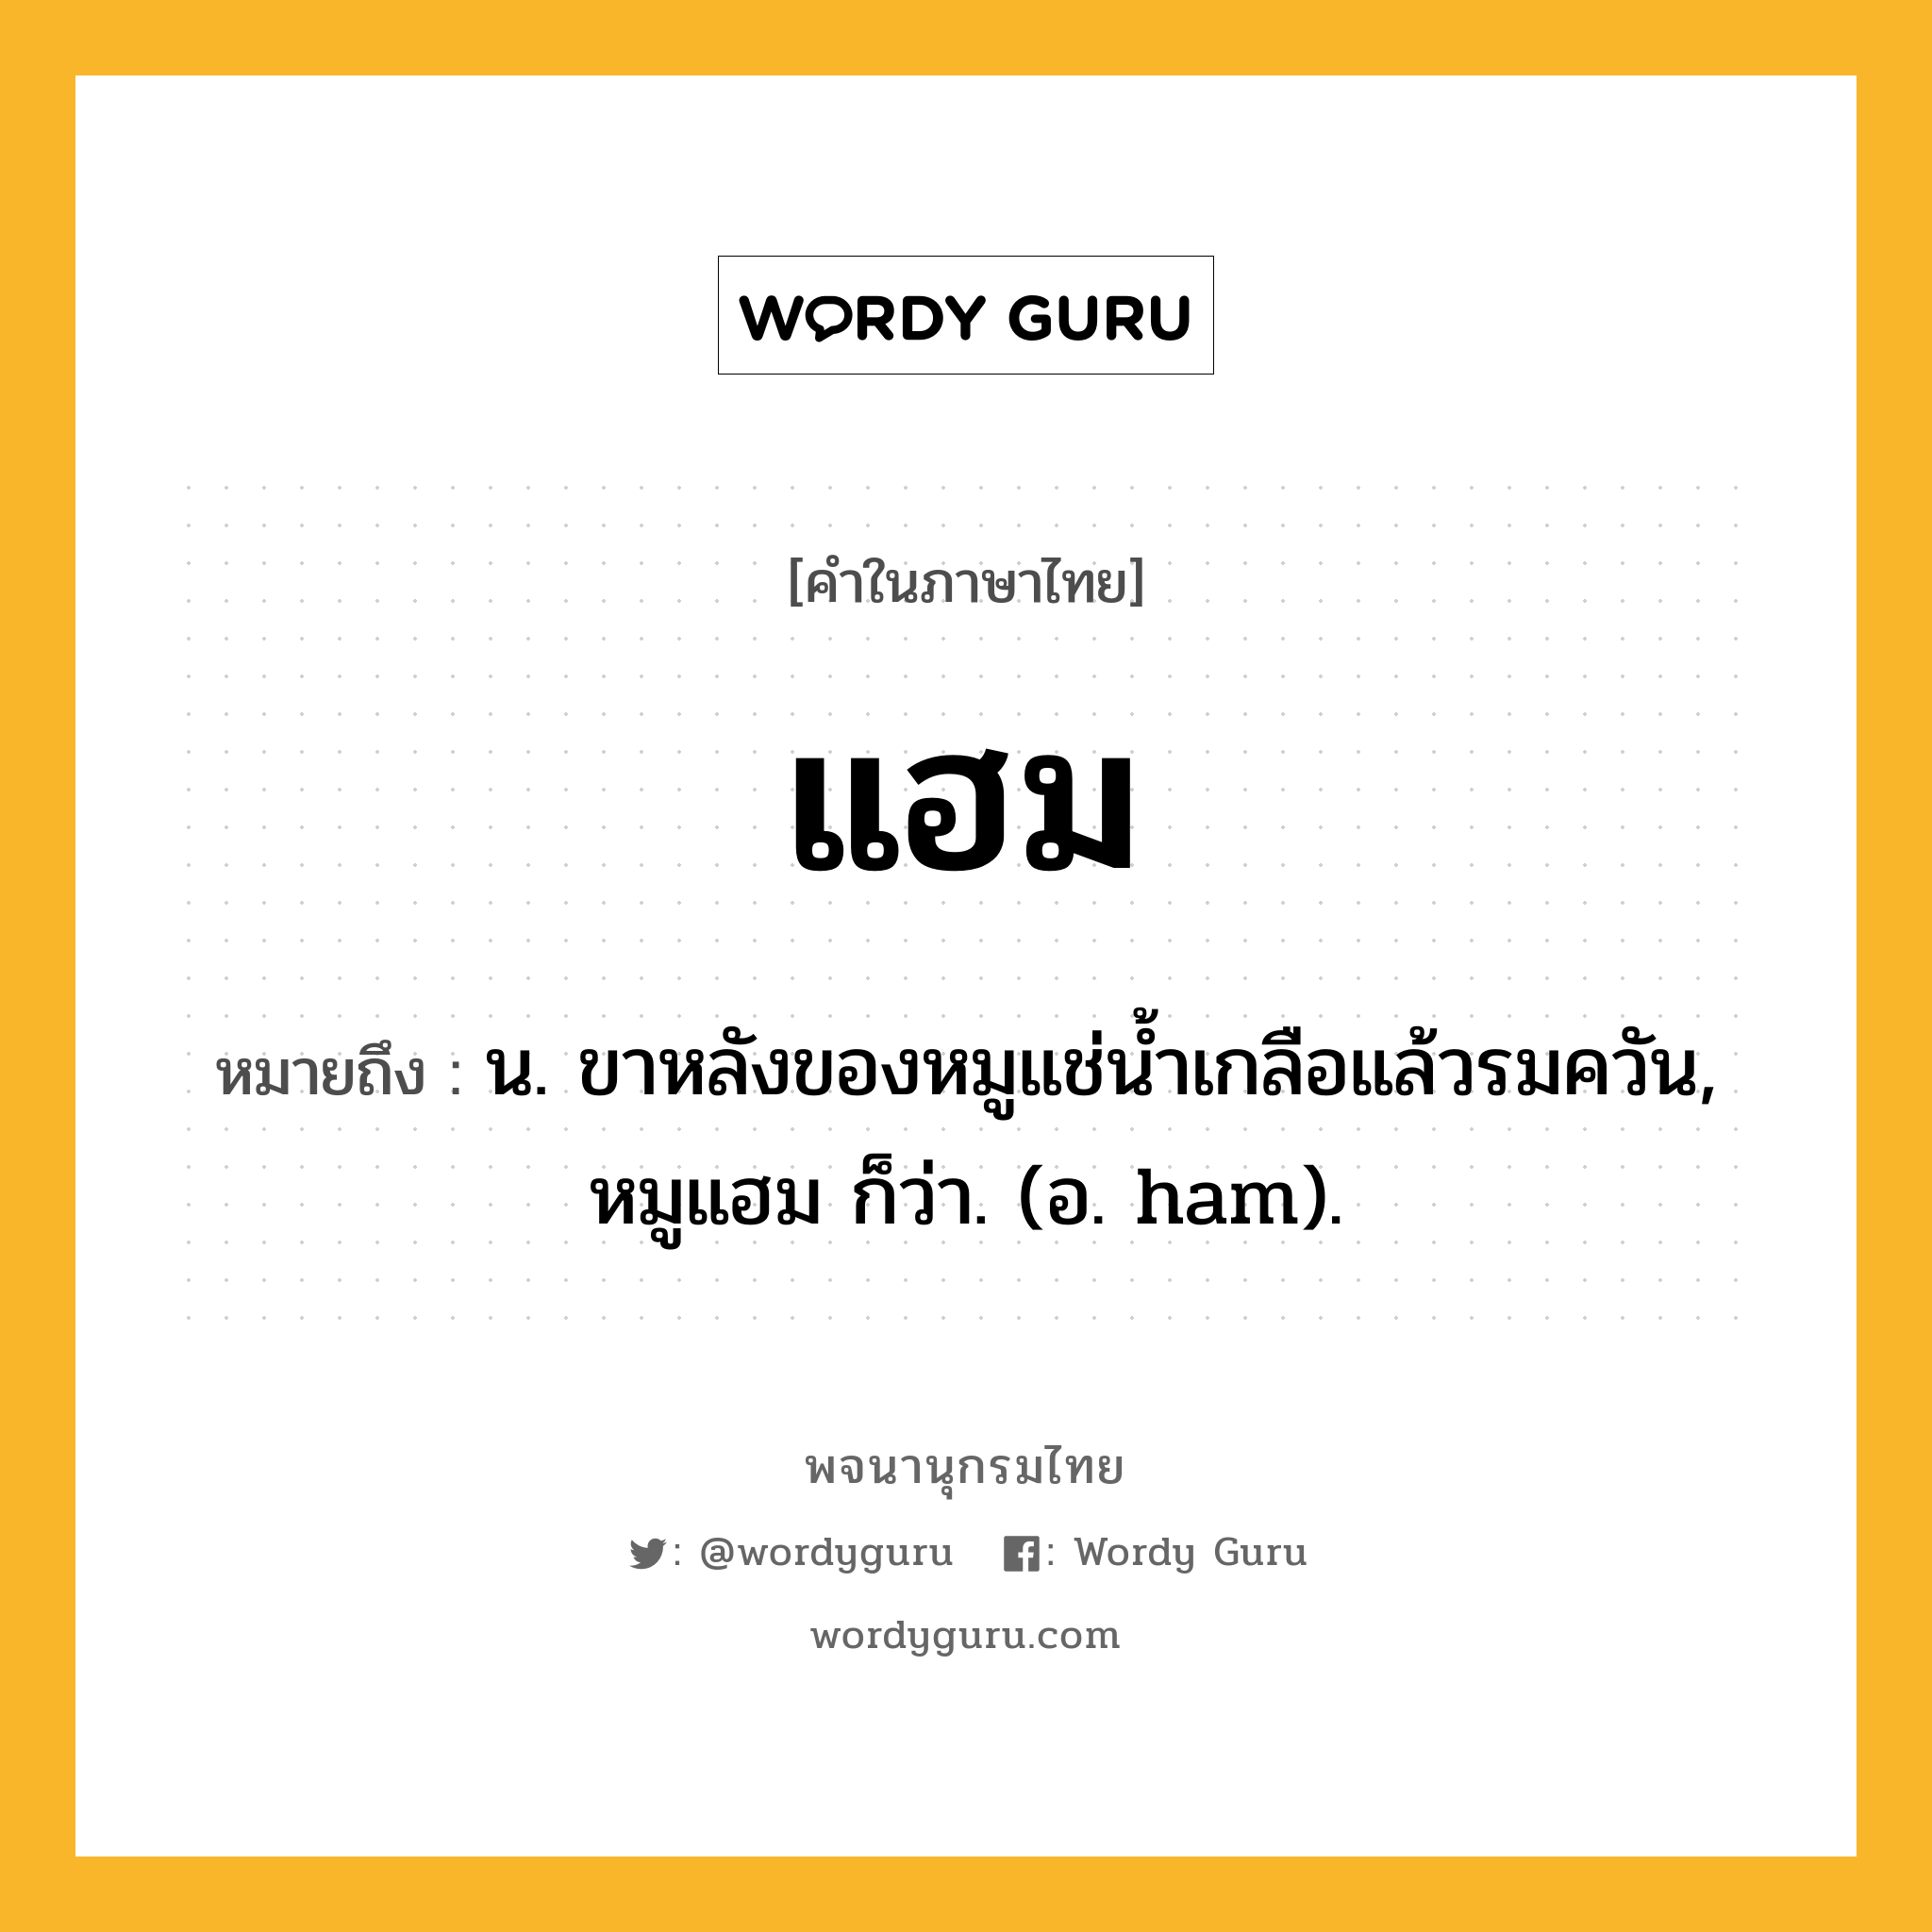 แฮม หมายถึงอะไร? | Wordy Guru